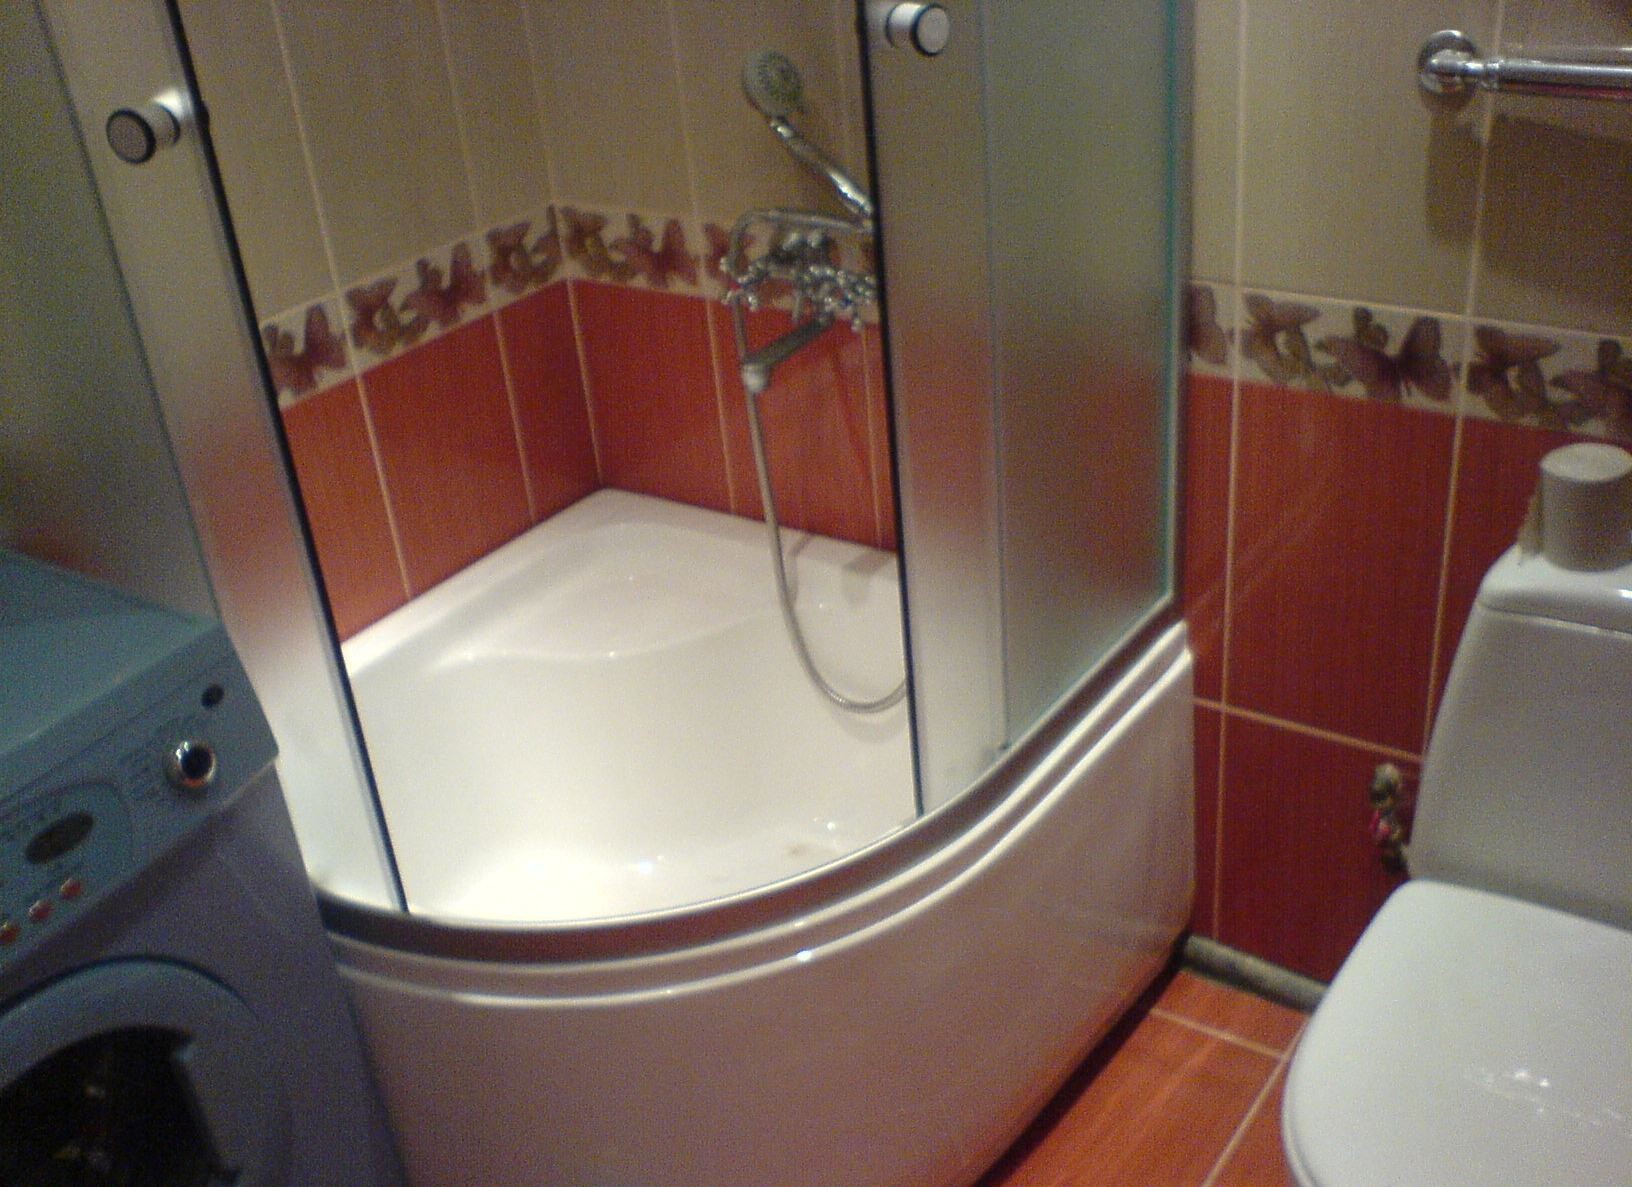 Ванная комната с душем без кабины дизайн фото со шторкой